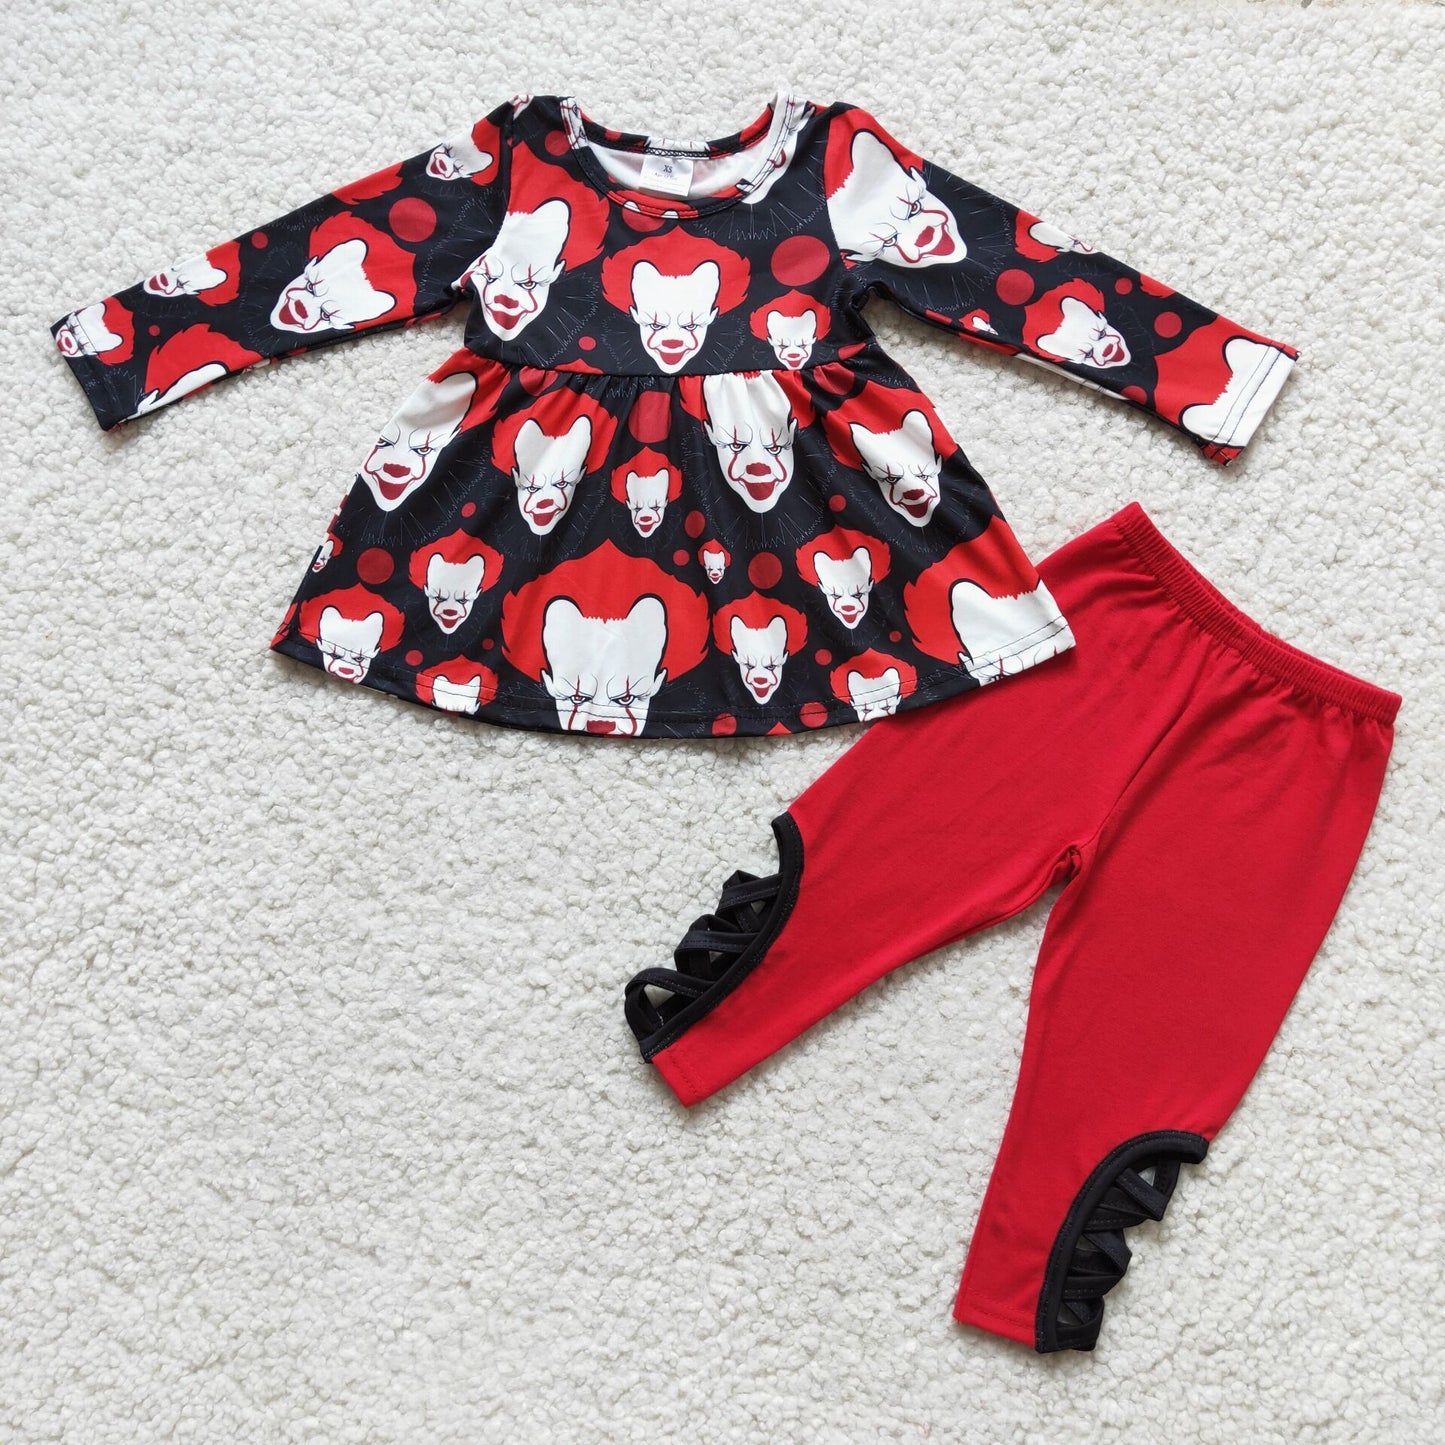 black red clown leggings set girl Halloween clothing